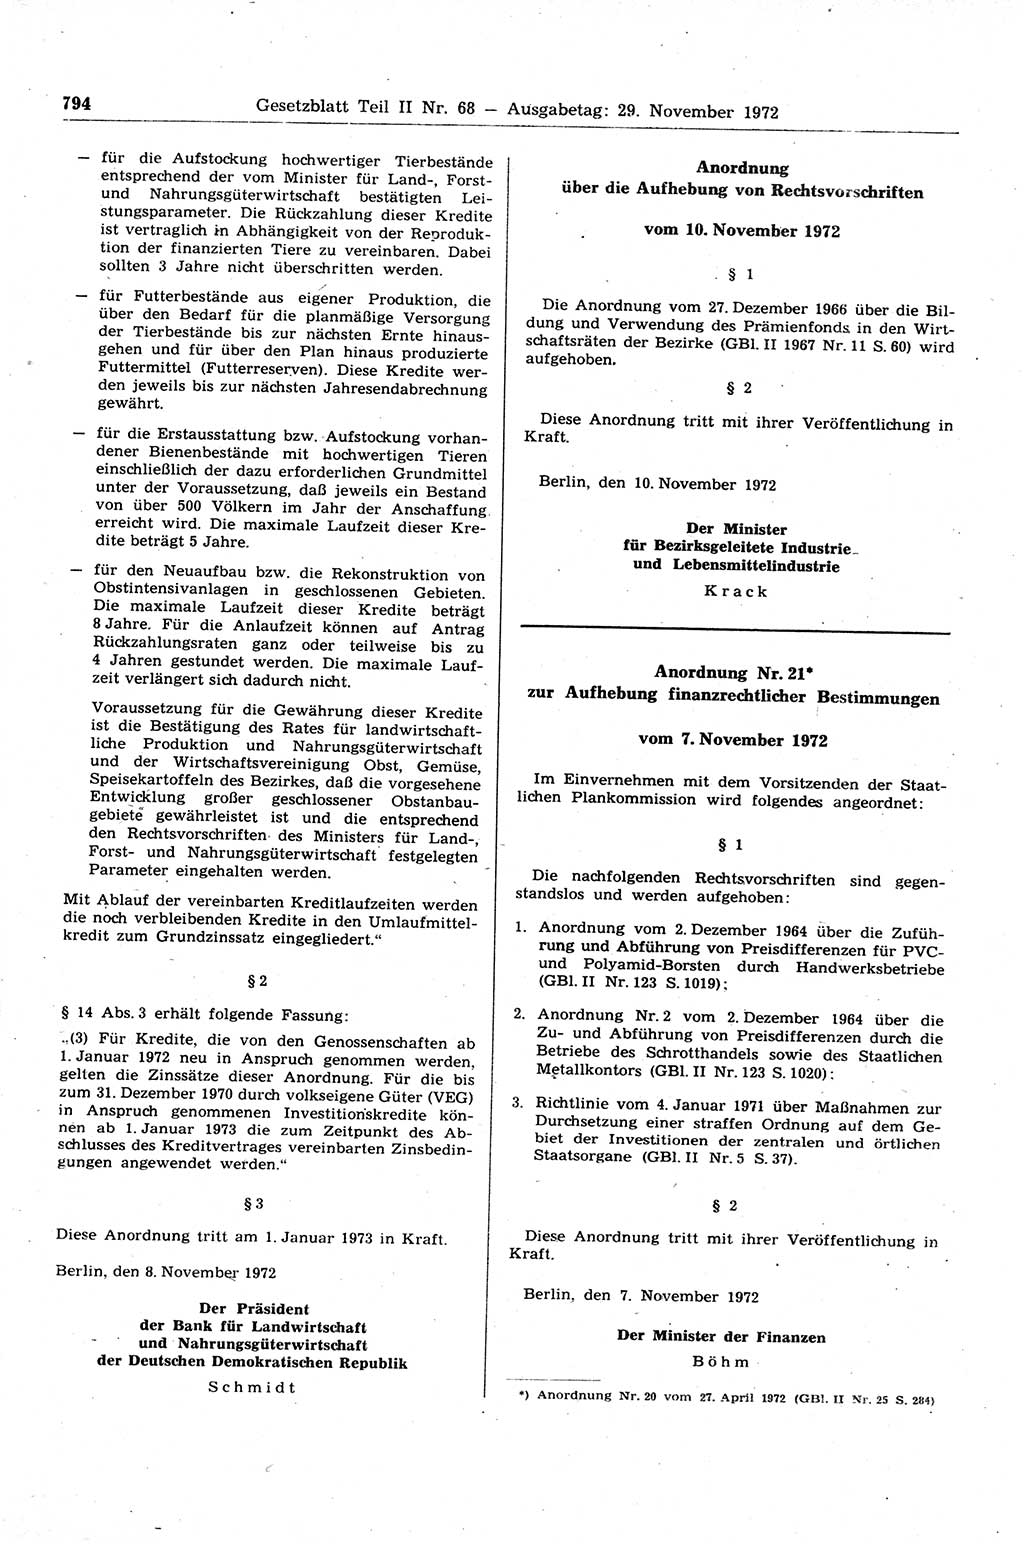 Gesetzblatt (GBl.) der Deutschen Demokratischen Republik (DDR) Teil ⅠⅠ 1972, Seite 794 (GBl. DDR ⅠⅠ 1972, S. 794)